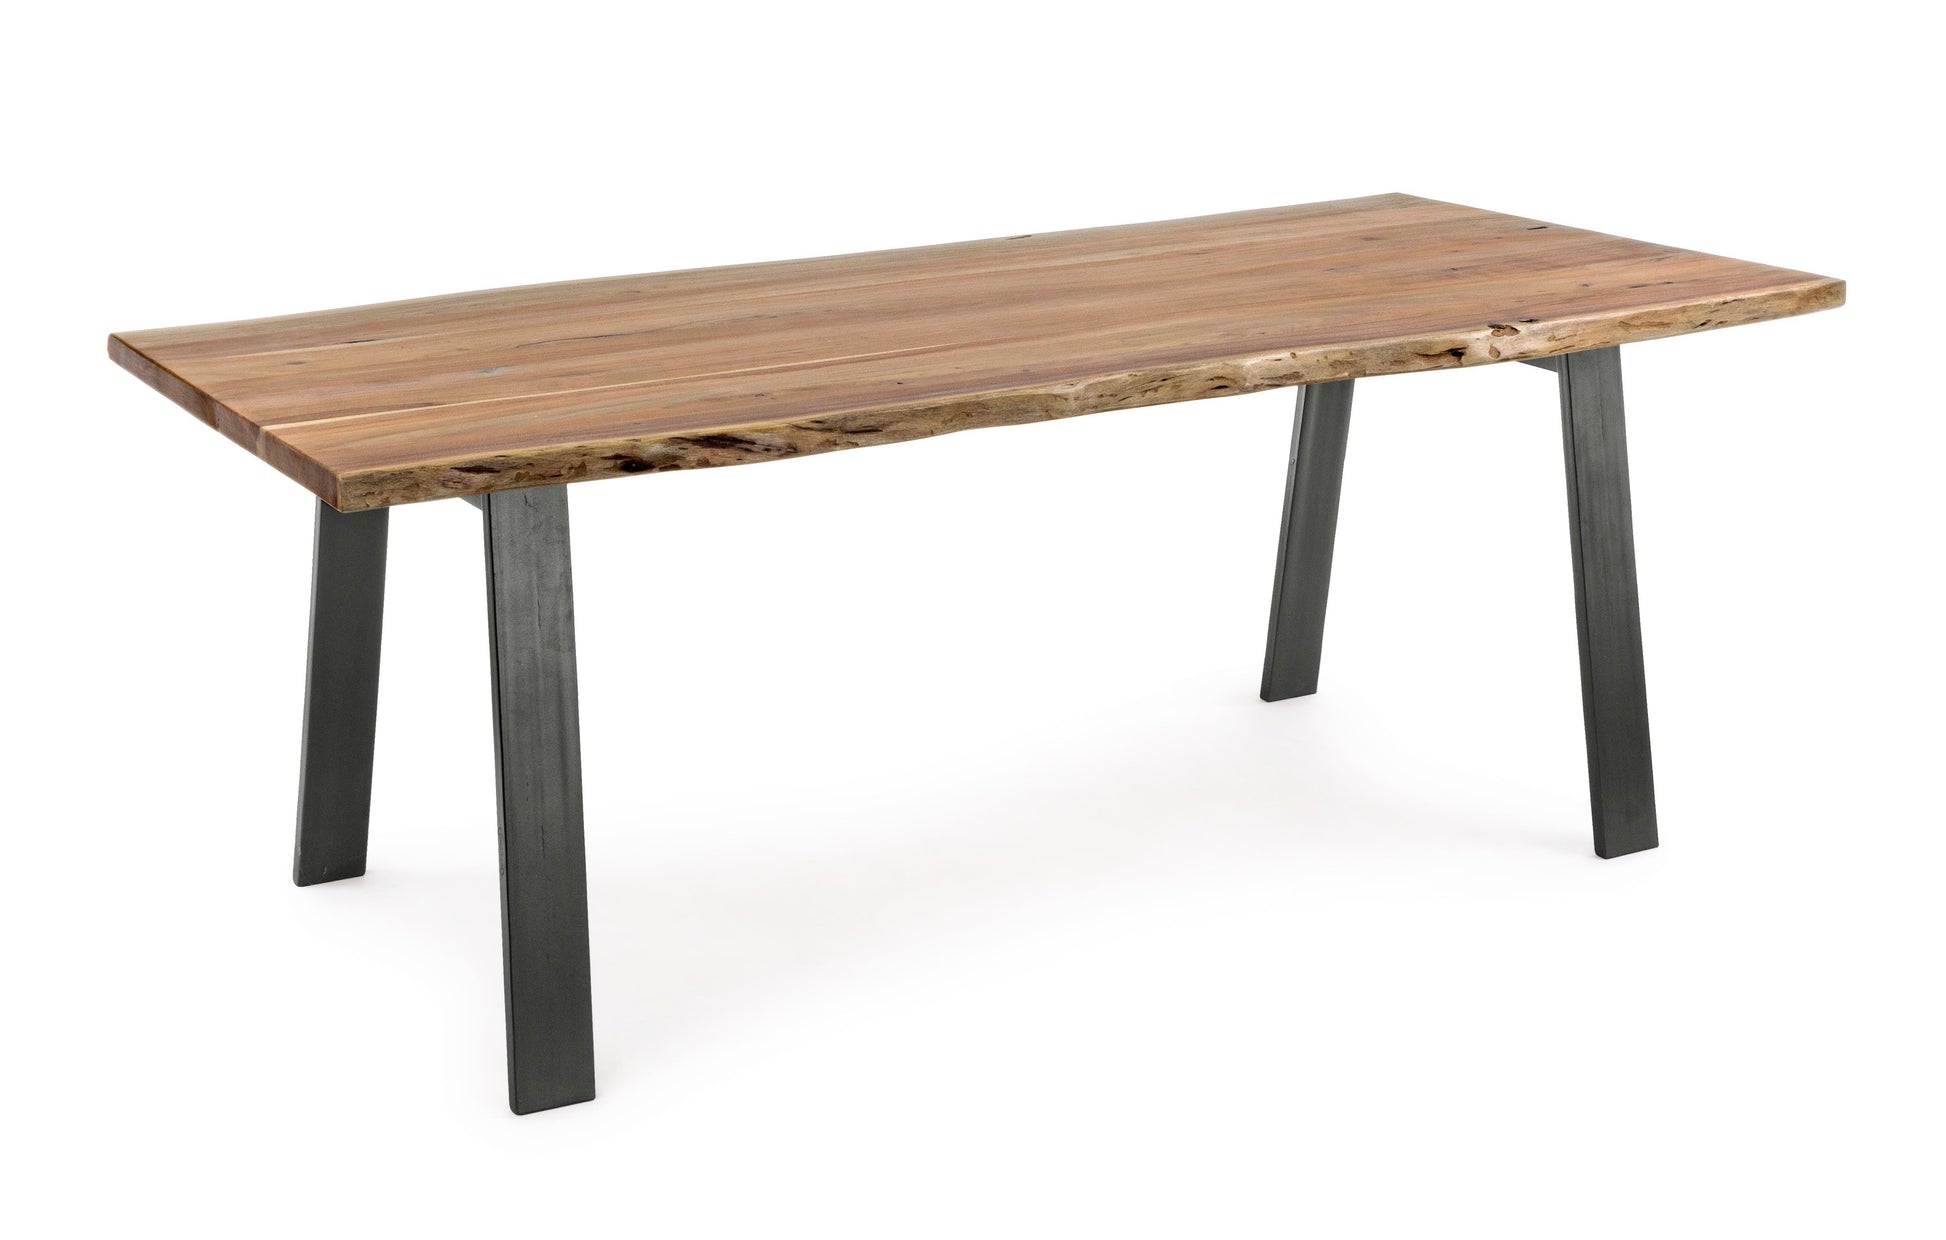 Tavolo industrial in legno massello con bordi irregolari - effetto legno vivo  200x95 -lapagoda.net